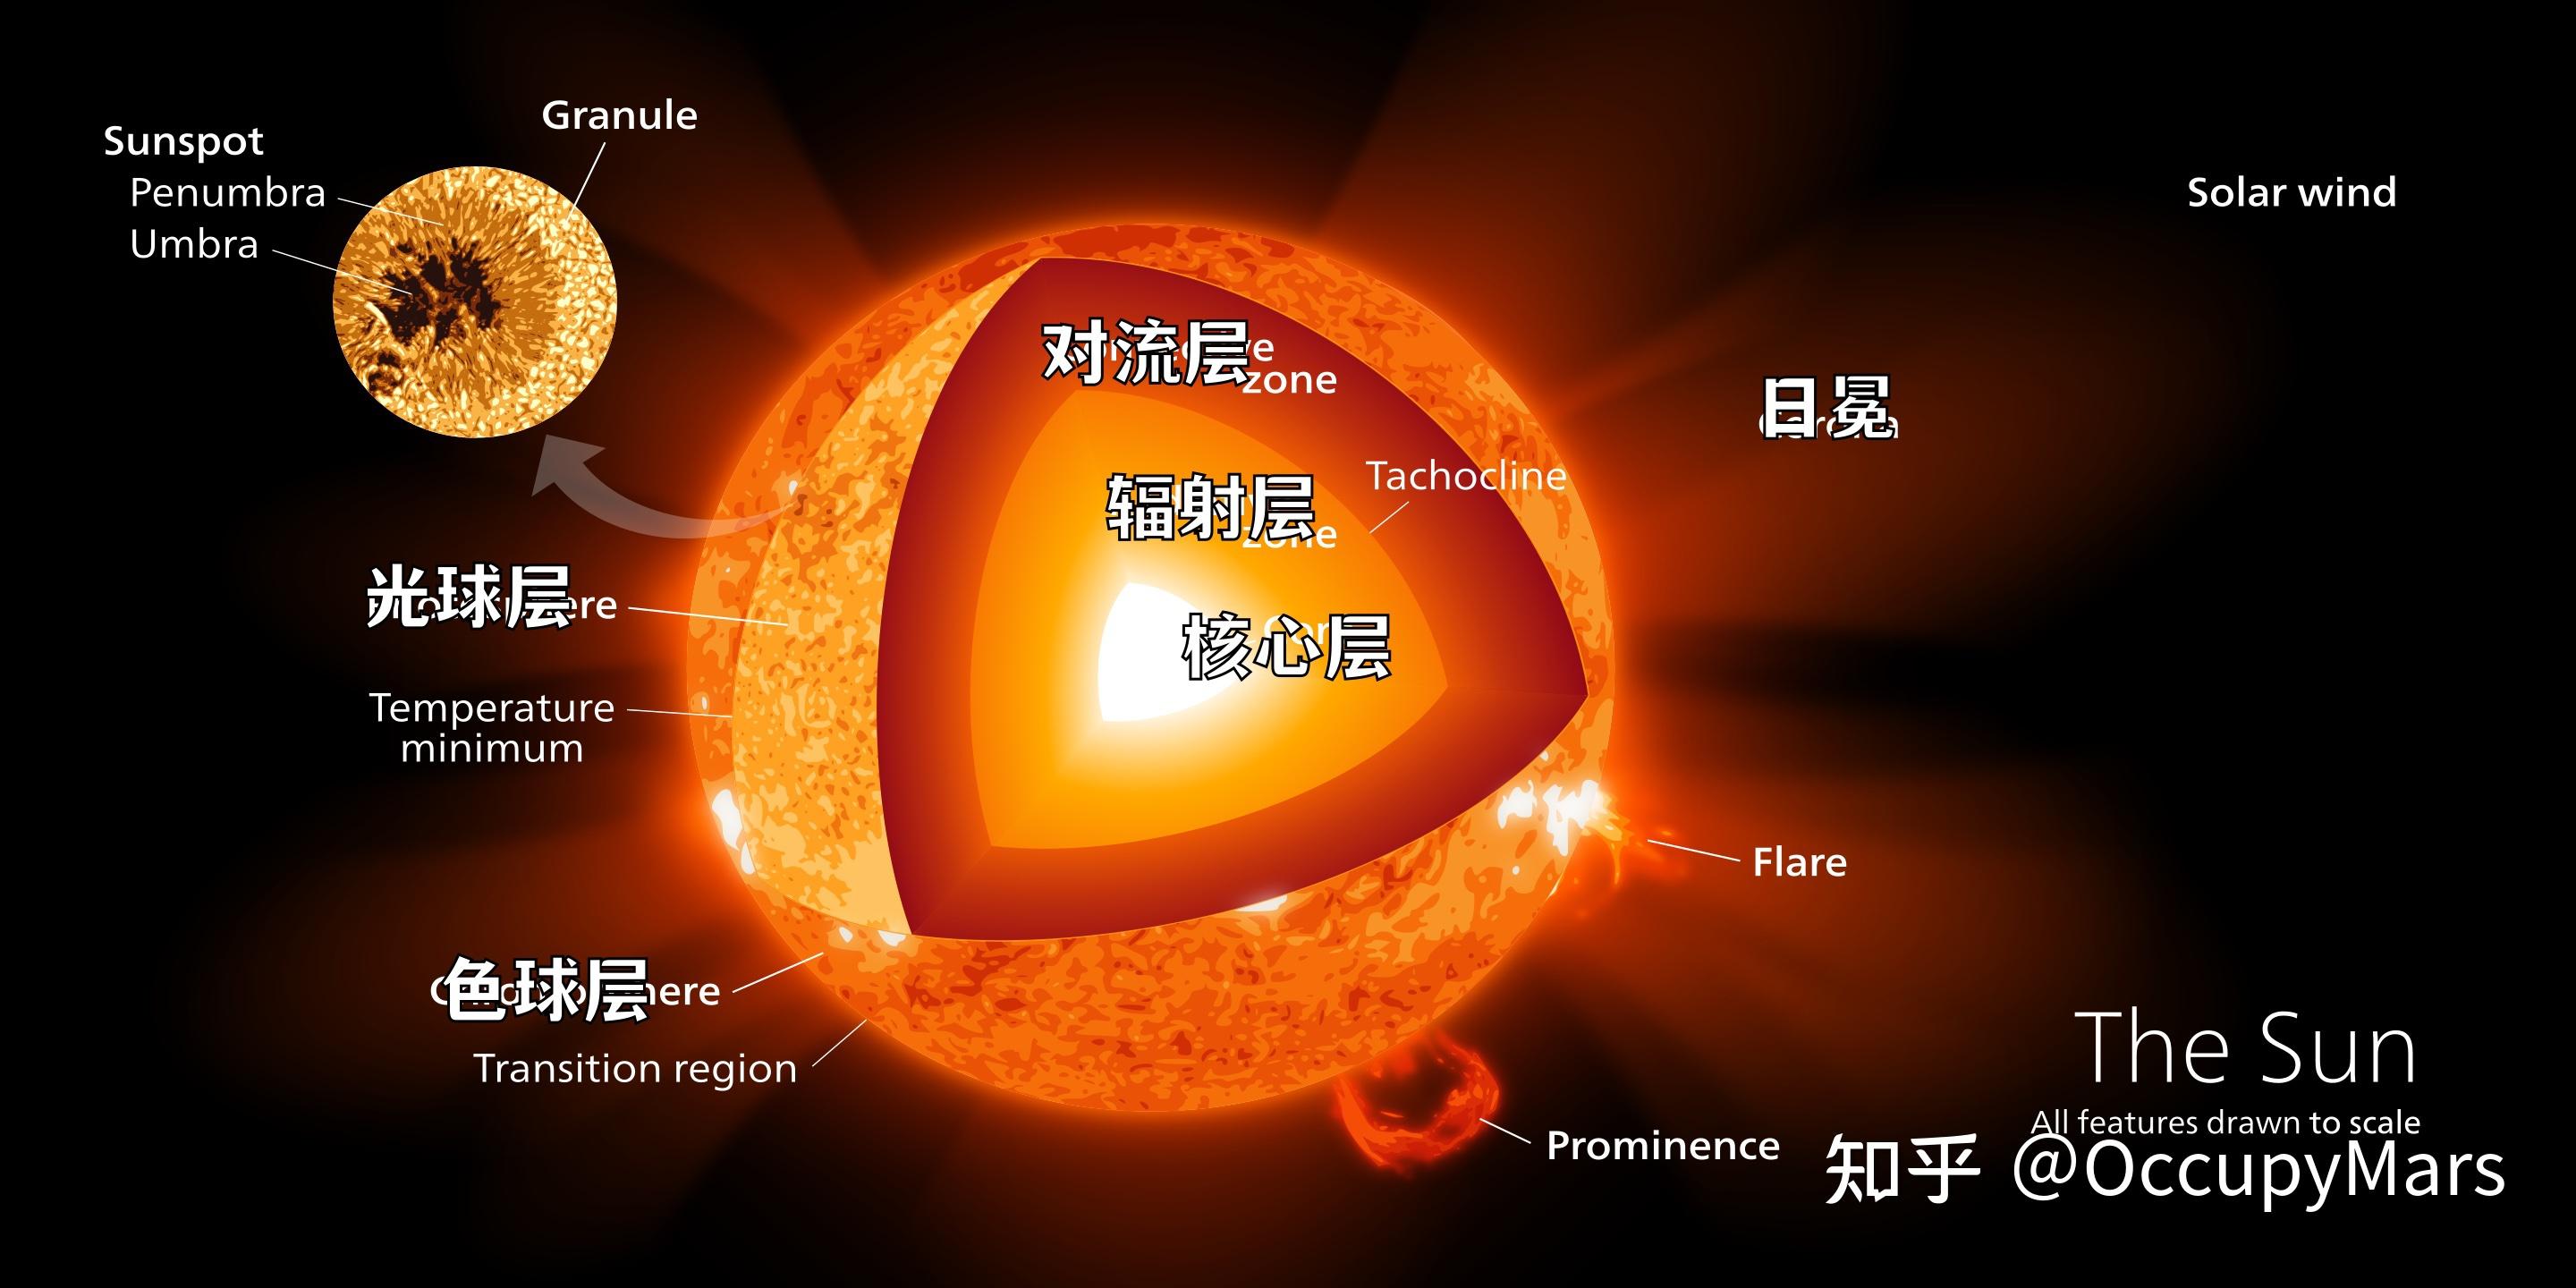 太阳结构示意图高中图片